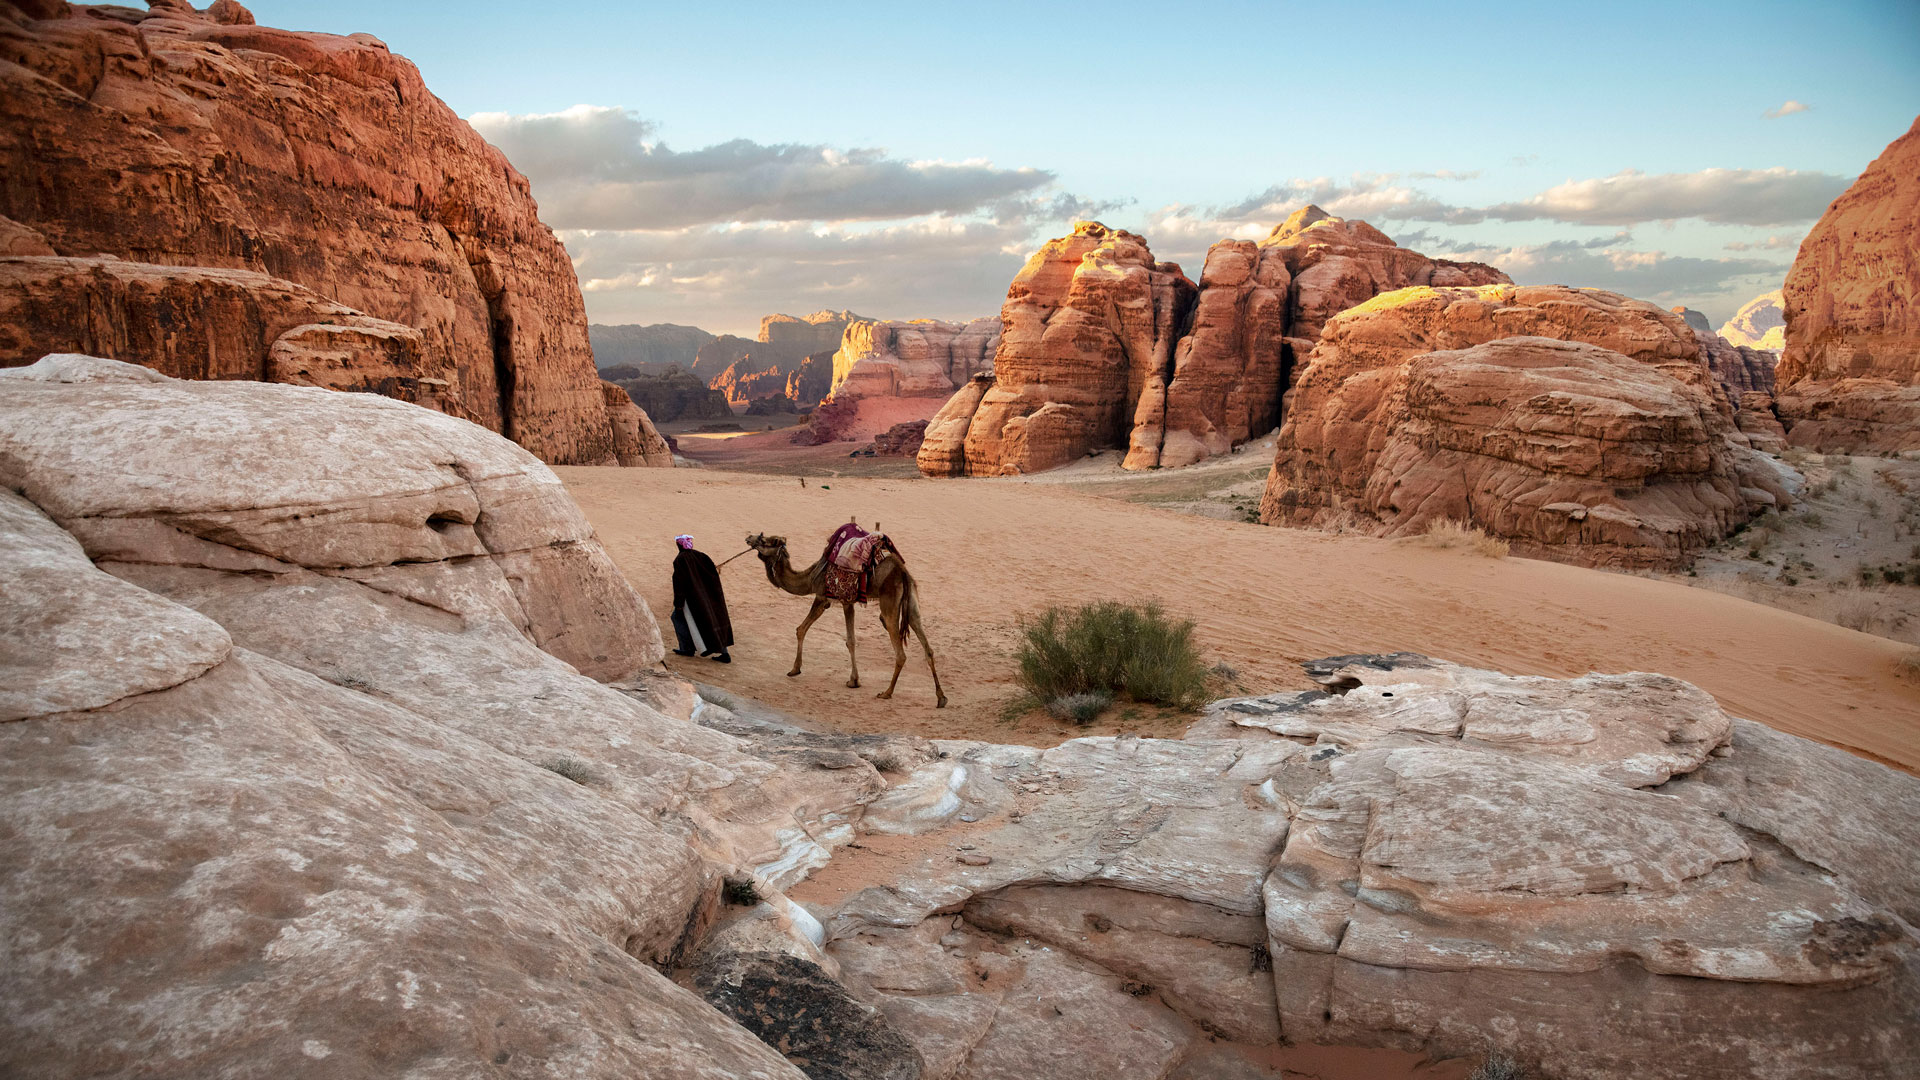 Une scène de désert où un homme mène un chameau à travers un paysage rouge et rocheux.